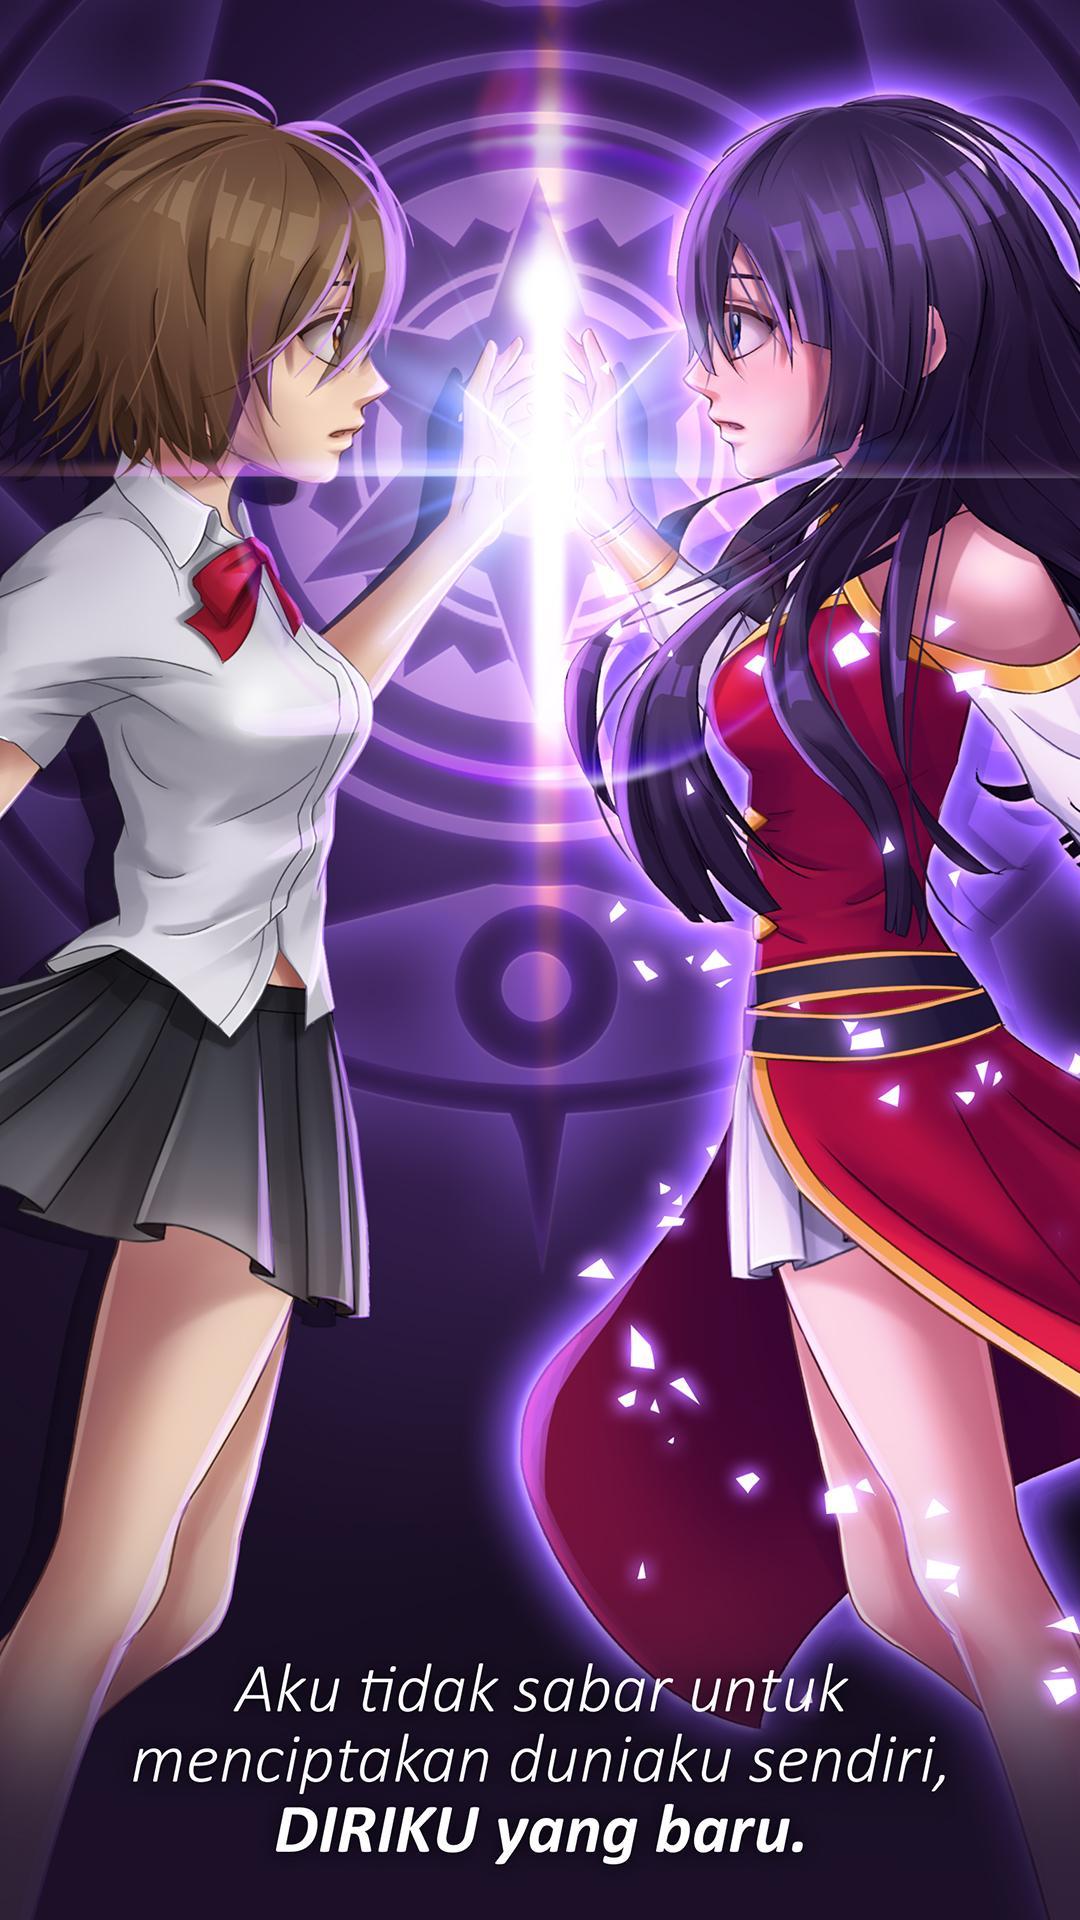 Permainan cerita cinta anime untuk perempuan for Android 